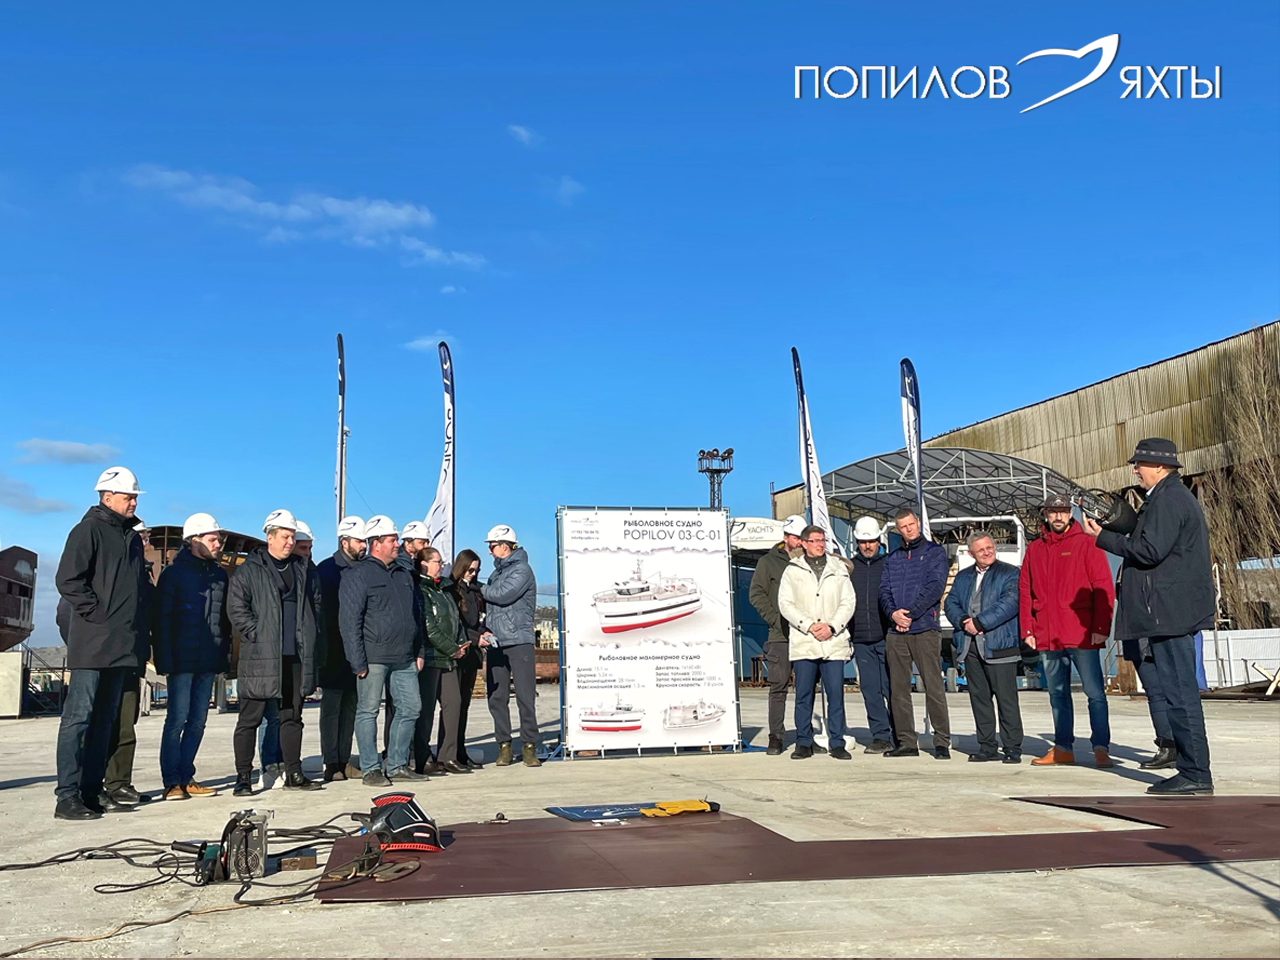 фото: В Севастополе верфь "Попилов" начинает производство маломерных рыболовных судов нового проекта